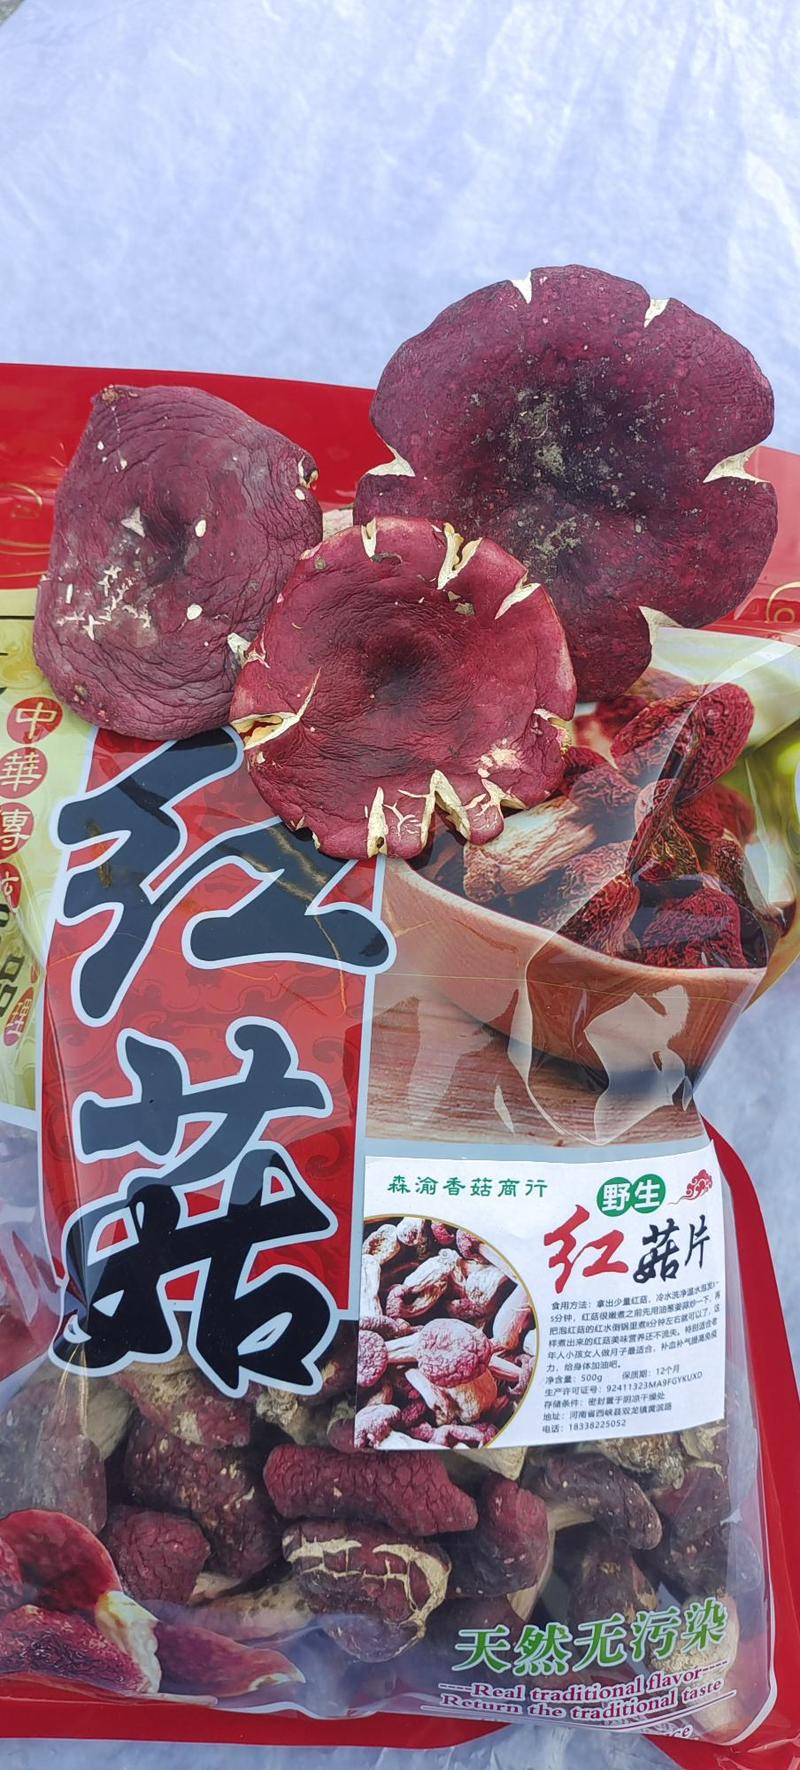 正宗野生紫红菇秋栋菇肉厚特甜月子餐主要食材新鲜滋补紫红菇